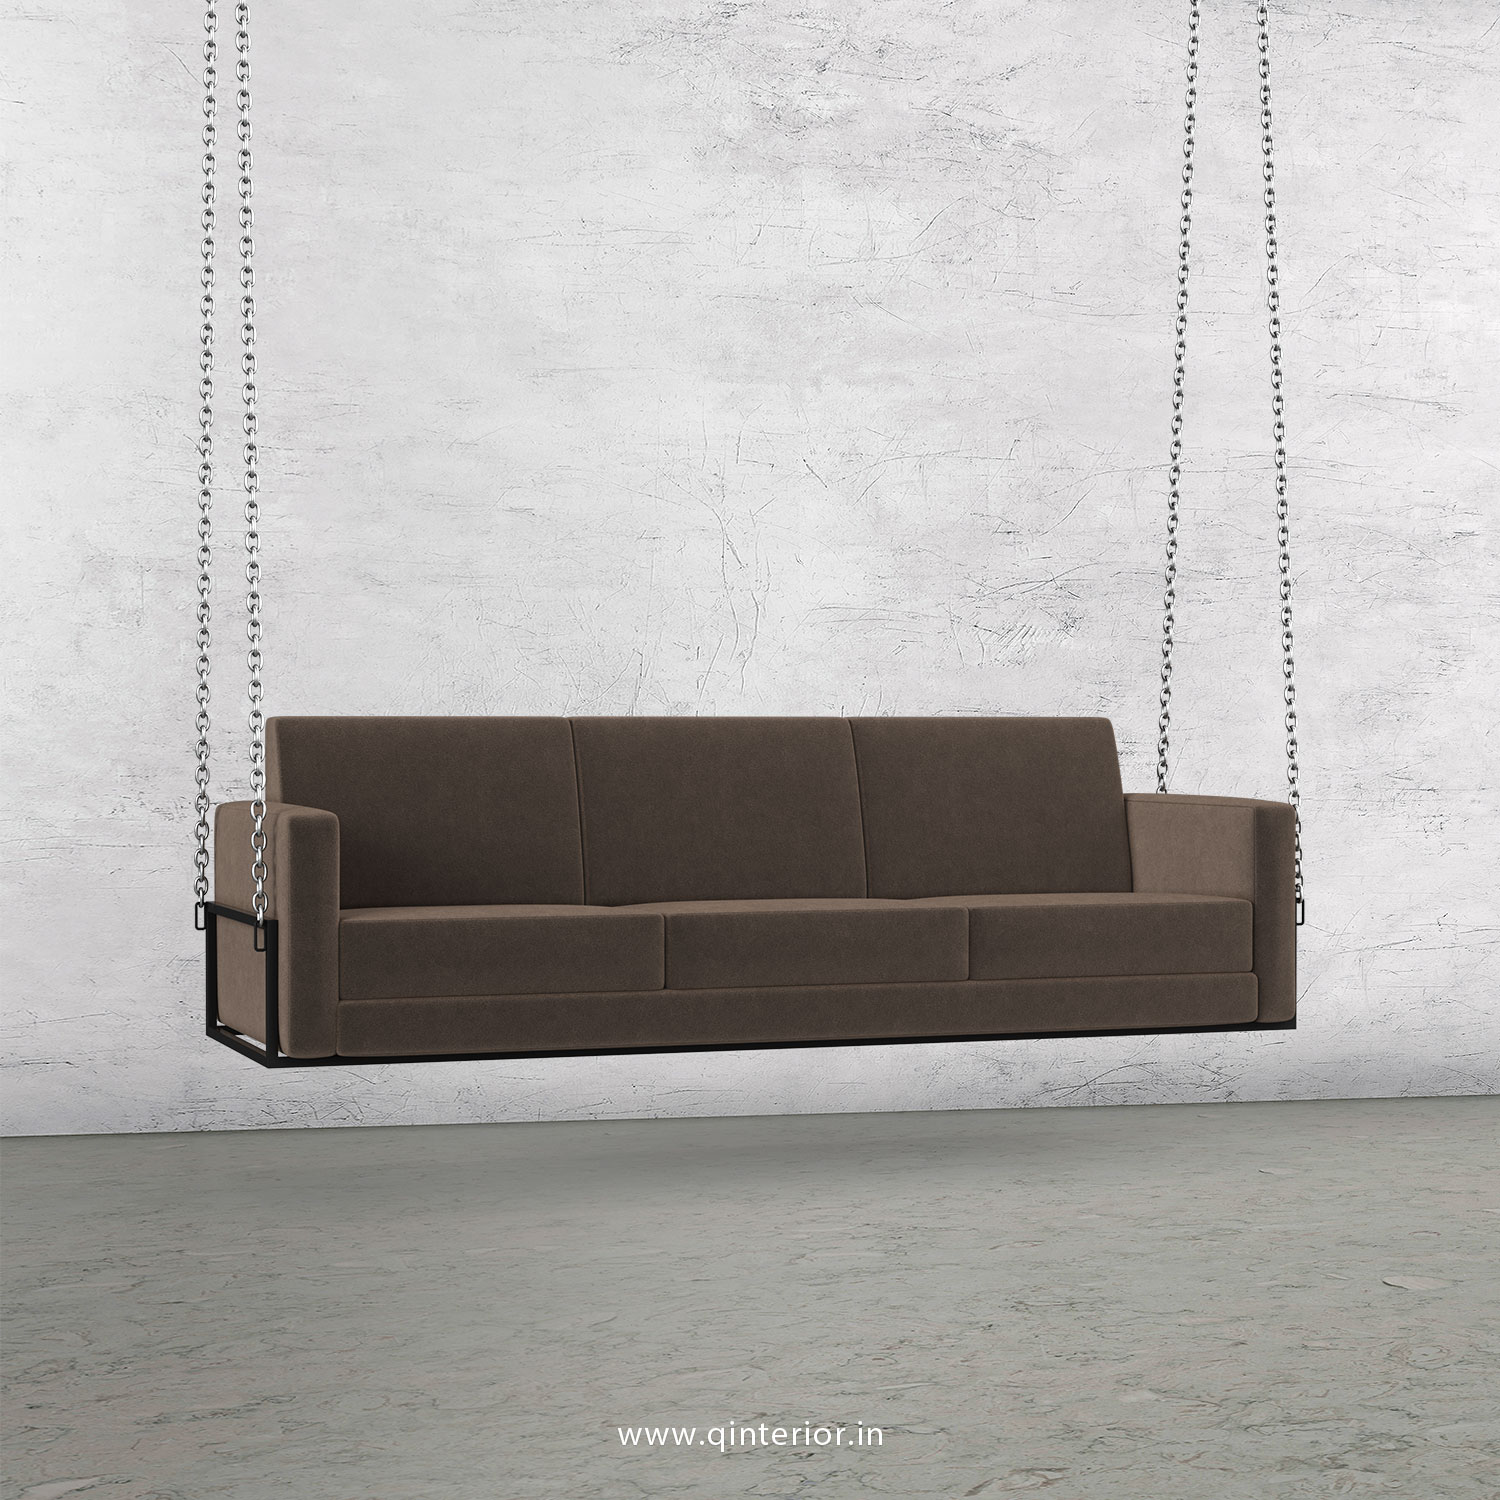 NIRVANA 3 Seater Swing Sofa in Velvet Fabric - SSF001 VL02